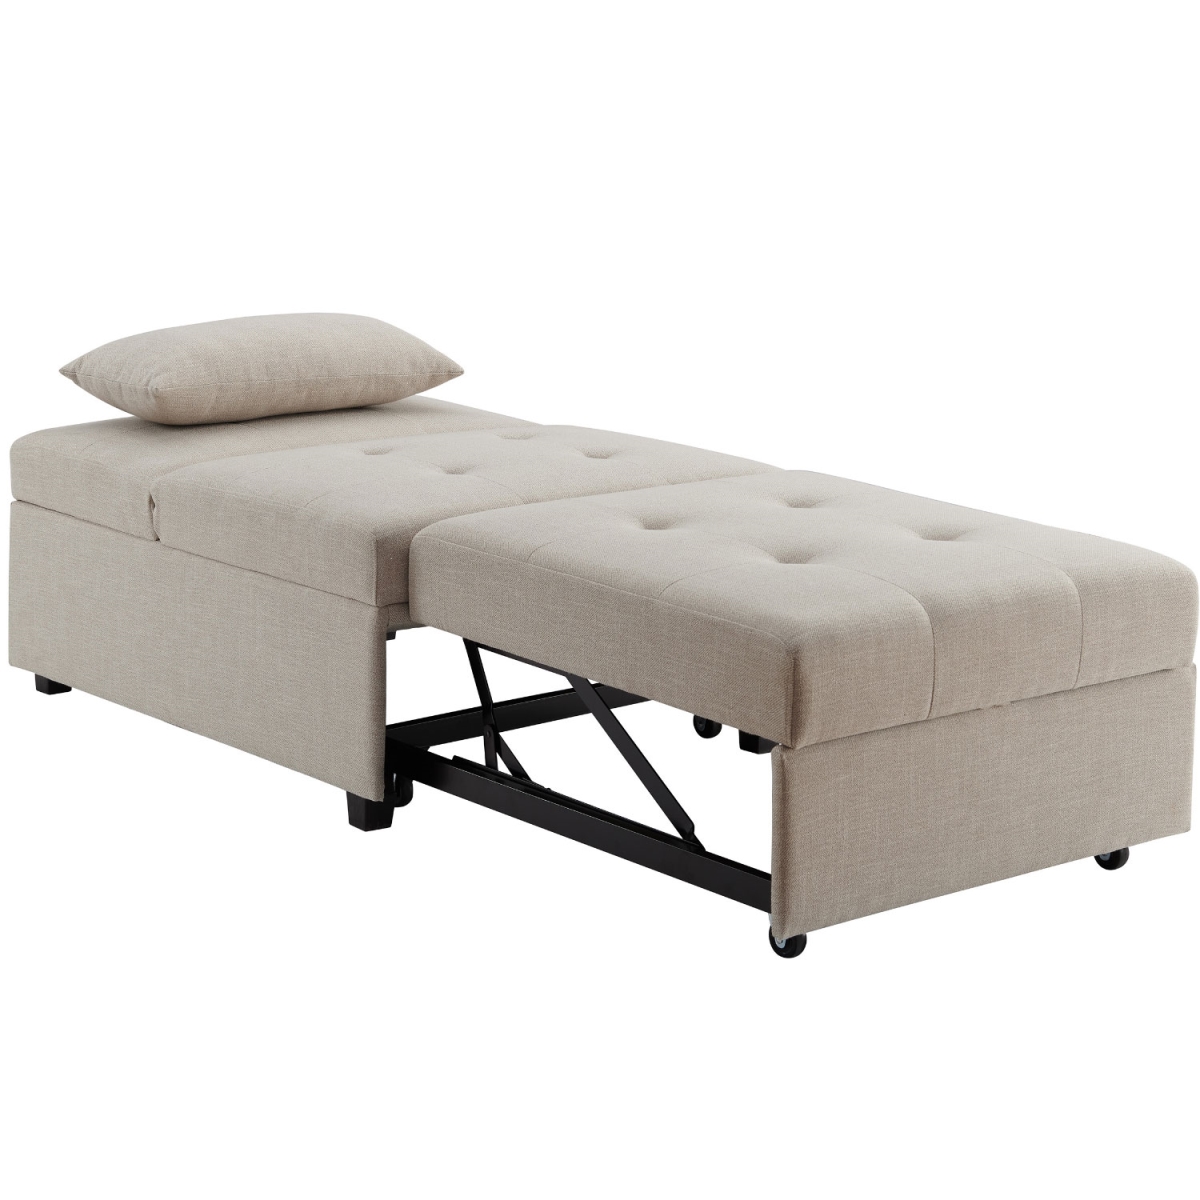 D1099s17c Boone Sofa Bed, Cream Twill